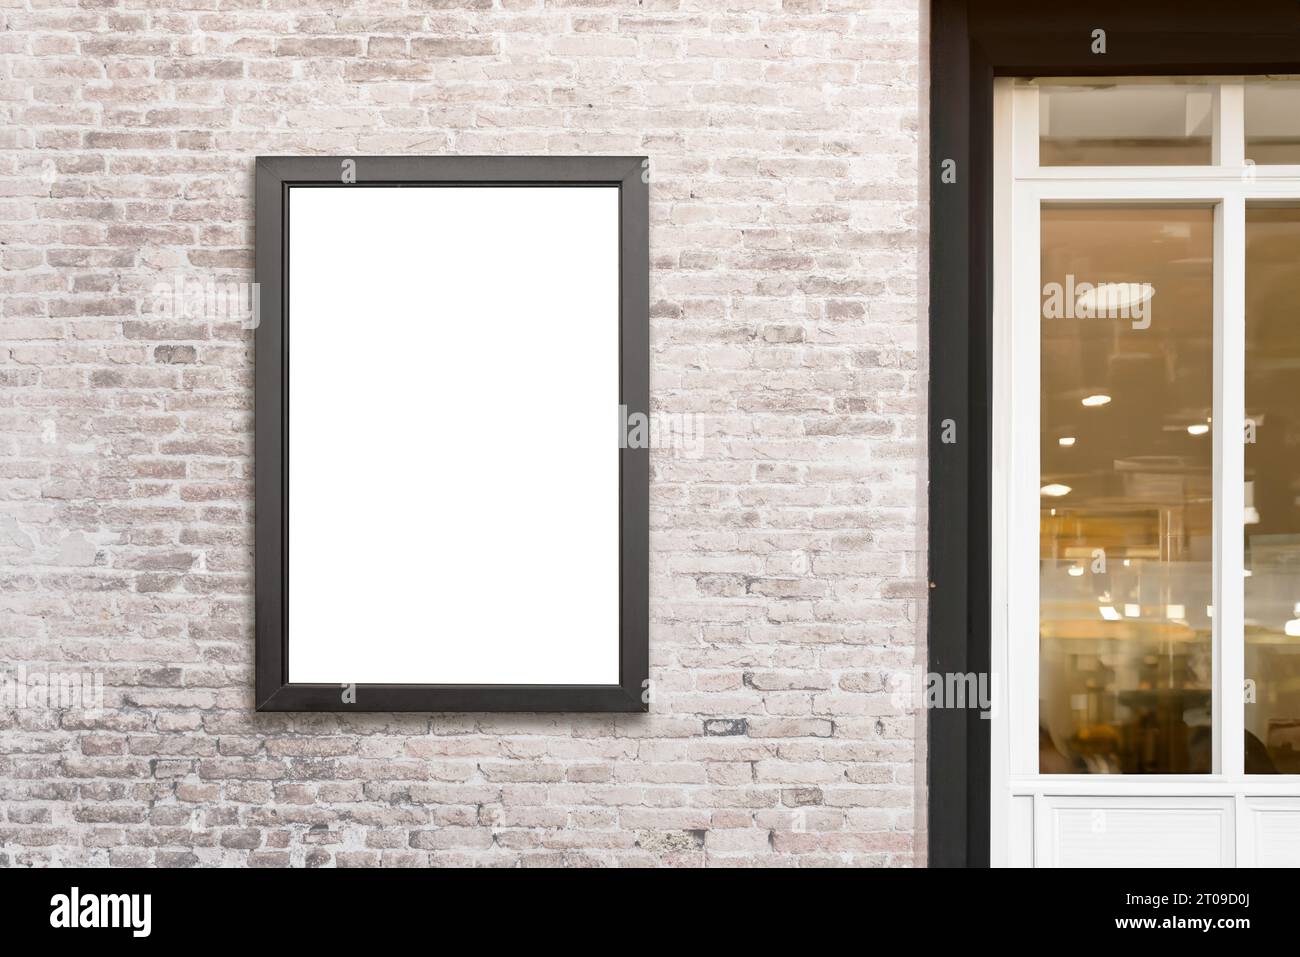 Vertikale Werbetafeln, die an einer Ziegelwand neben einer Ladentür montiert sind, bieten eine isolierte Oberfläche, die ideal für die Designförderung ist und eine attraktive Werbung schafft Stockfoto